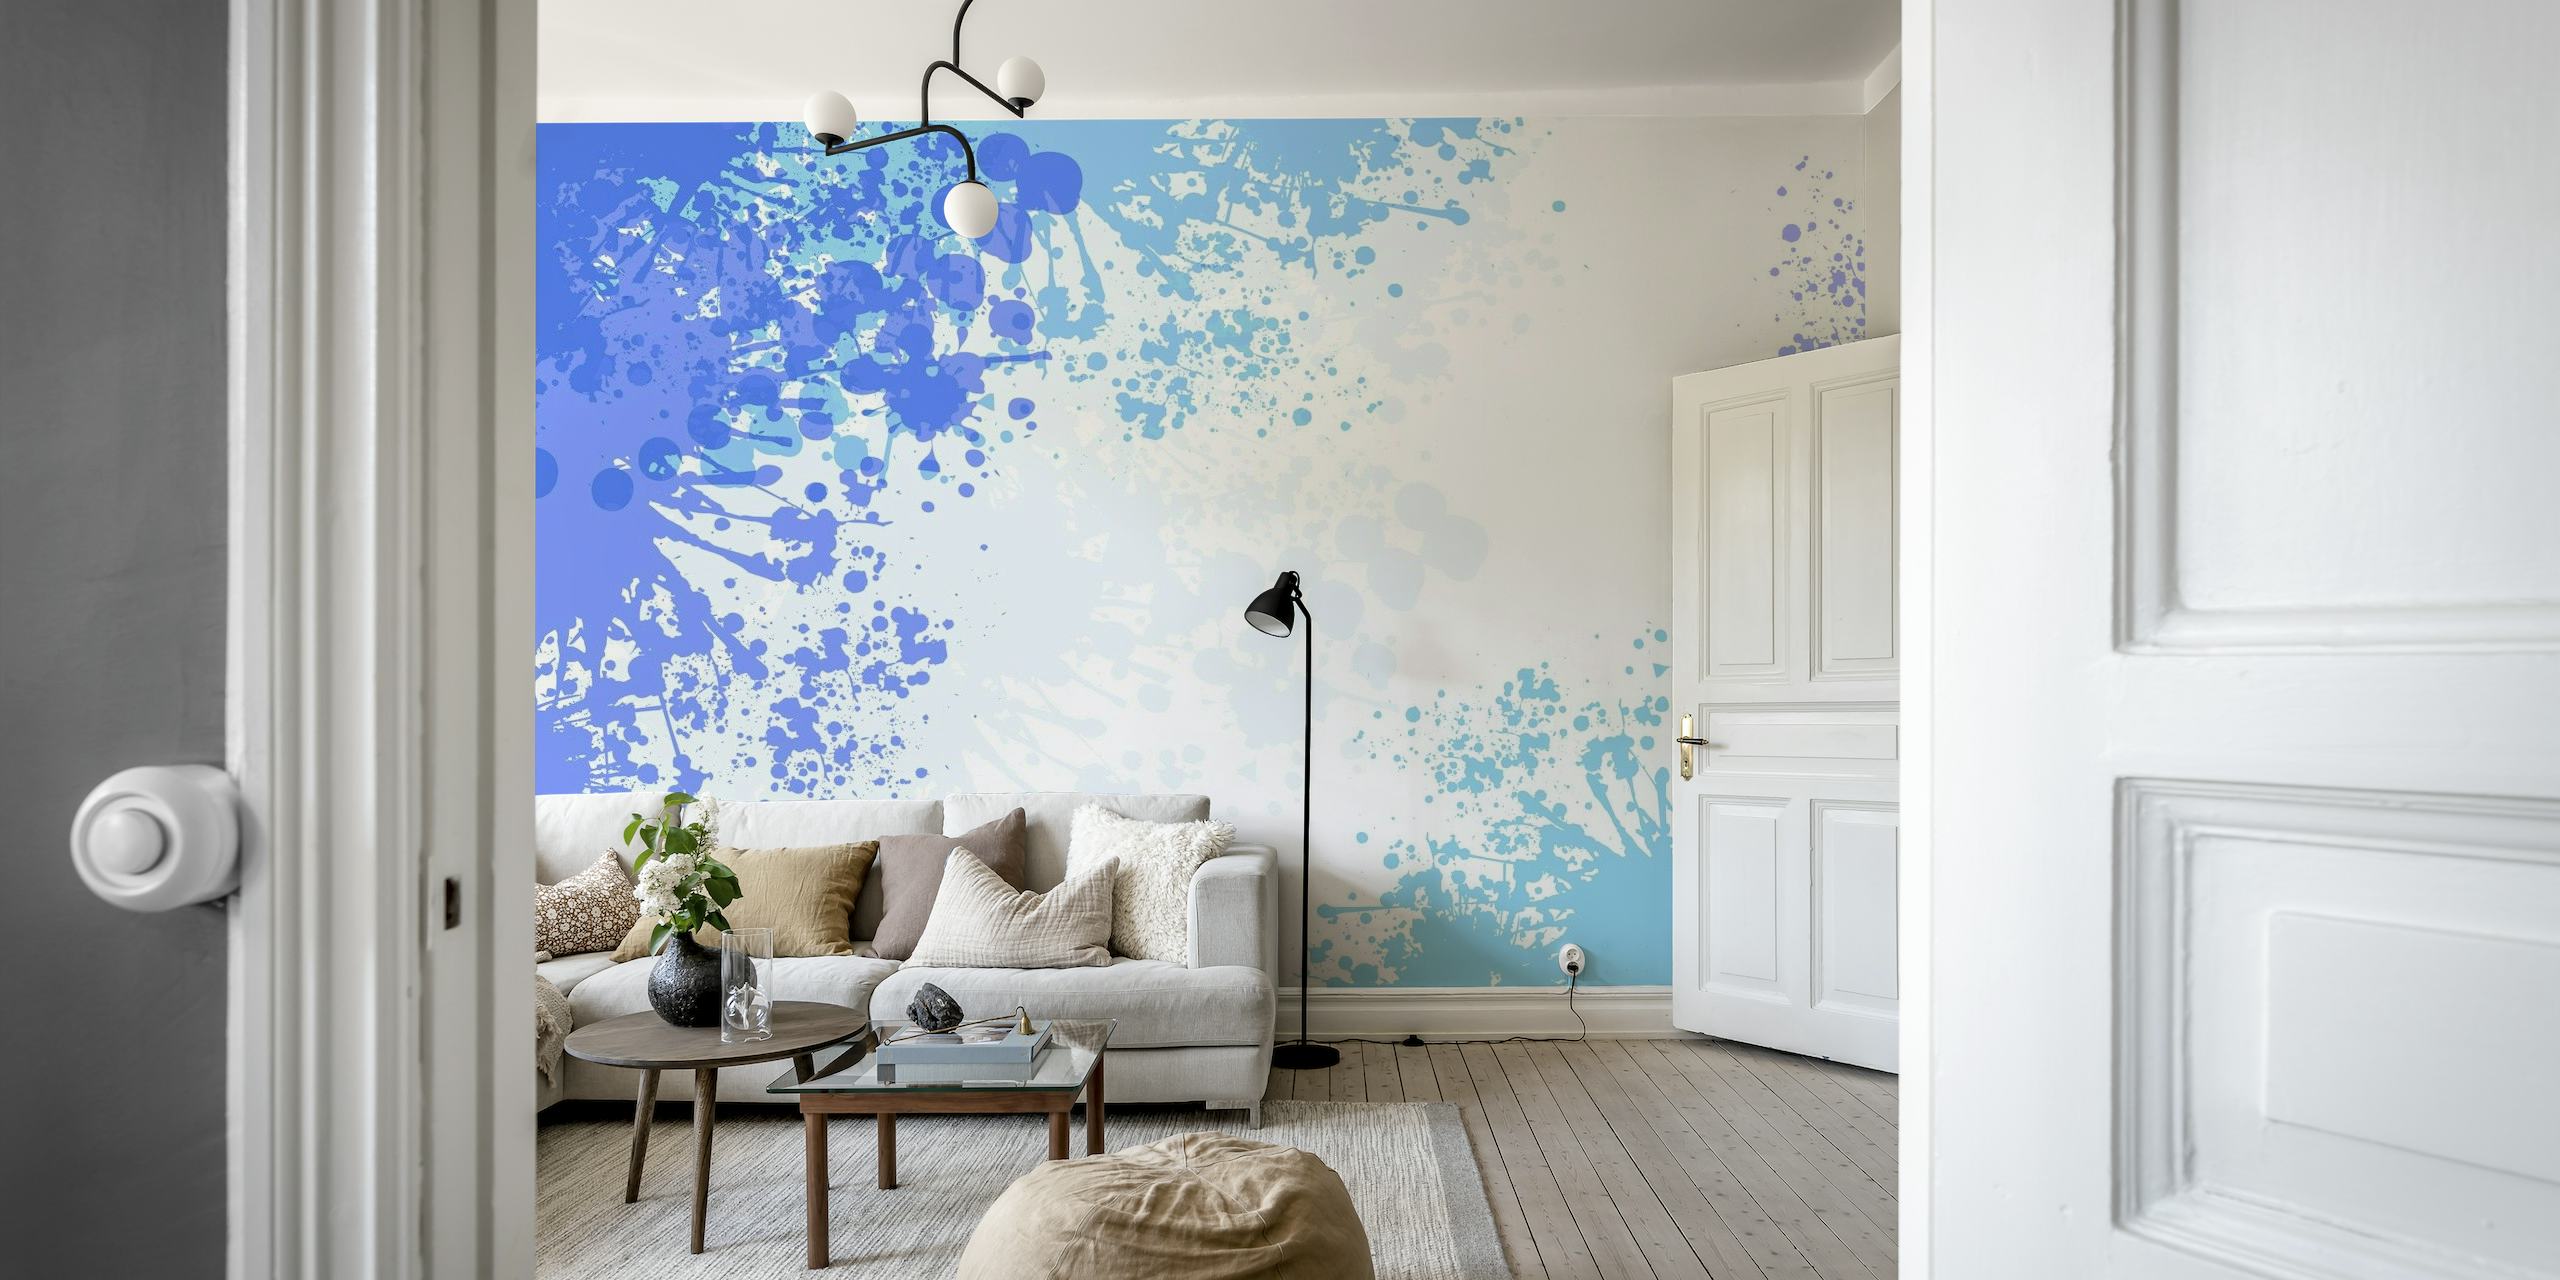 Abstrakt lyseblått kunstveggmaleri med en blanding av hvitt og dypere blått drypp på veggen.